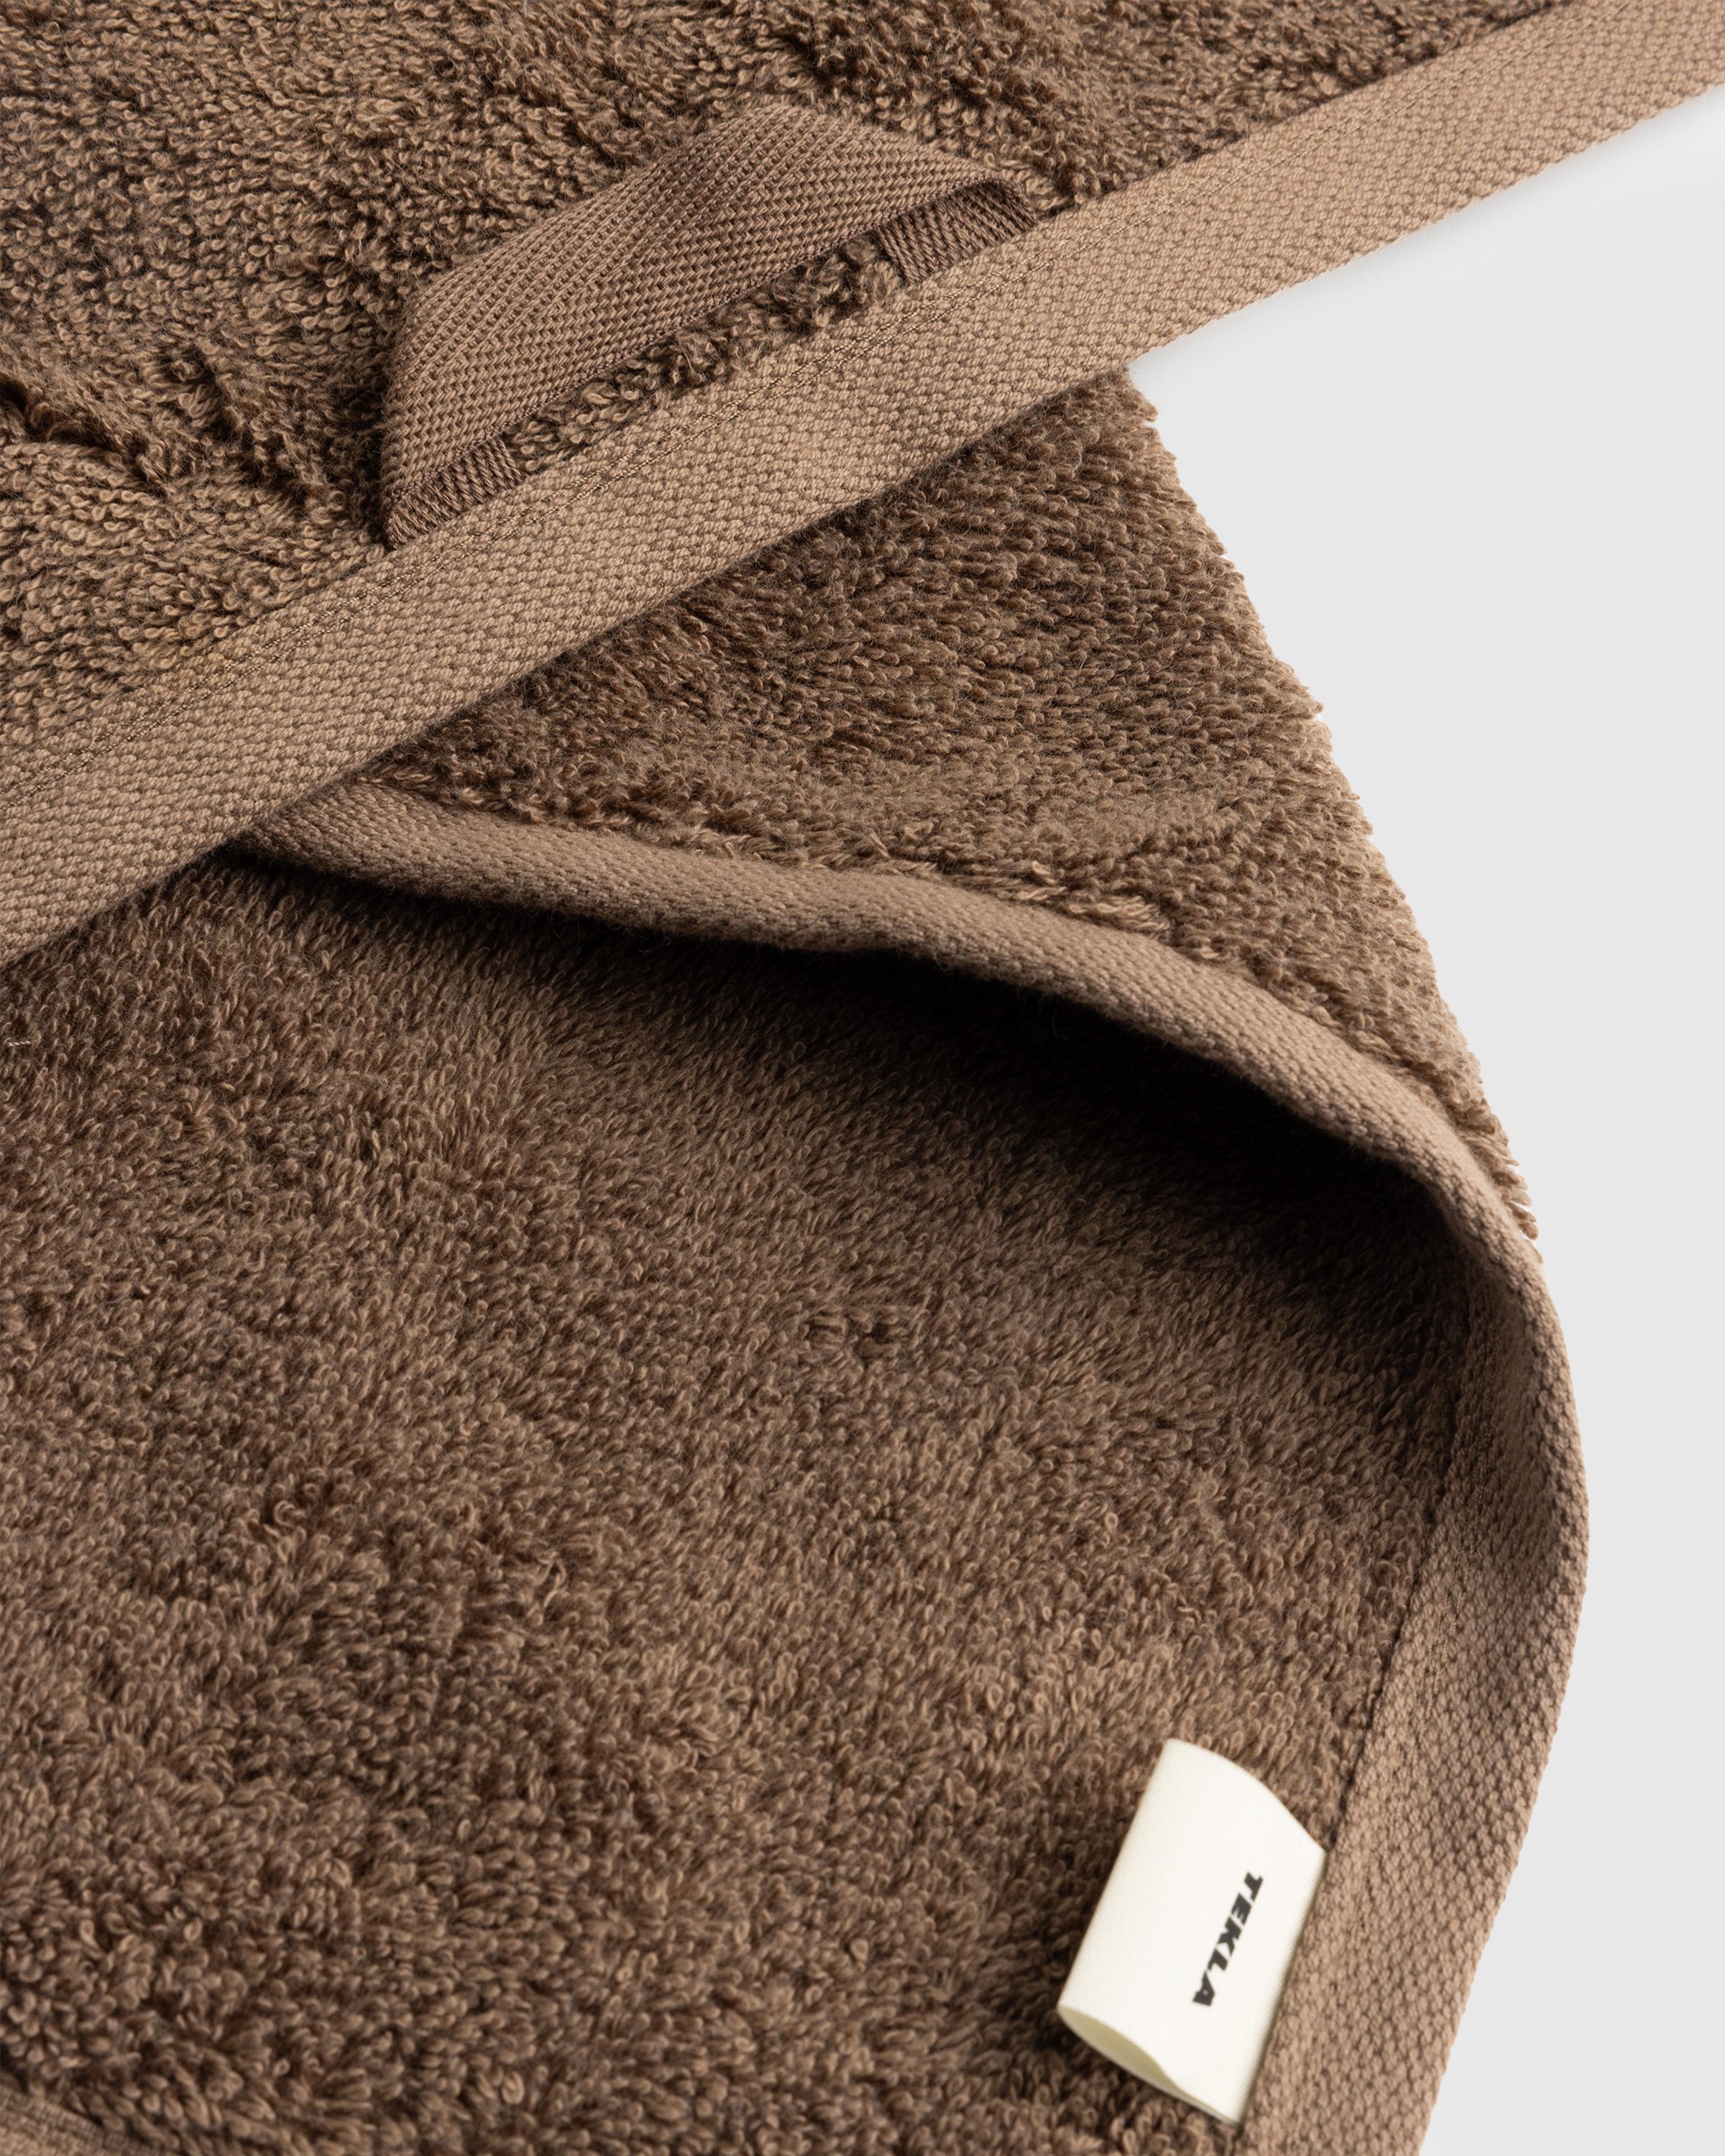 Tekla - Bath Towel Kodiak Brown - Lifestyle - Brown - Image 4